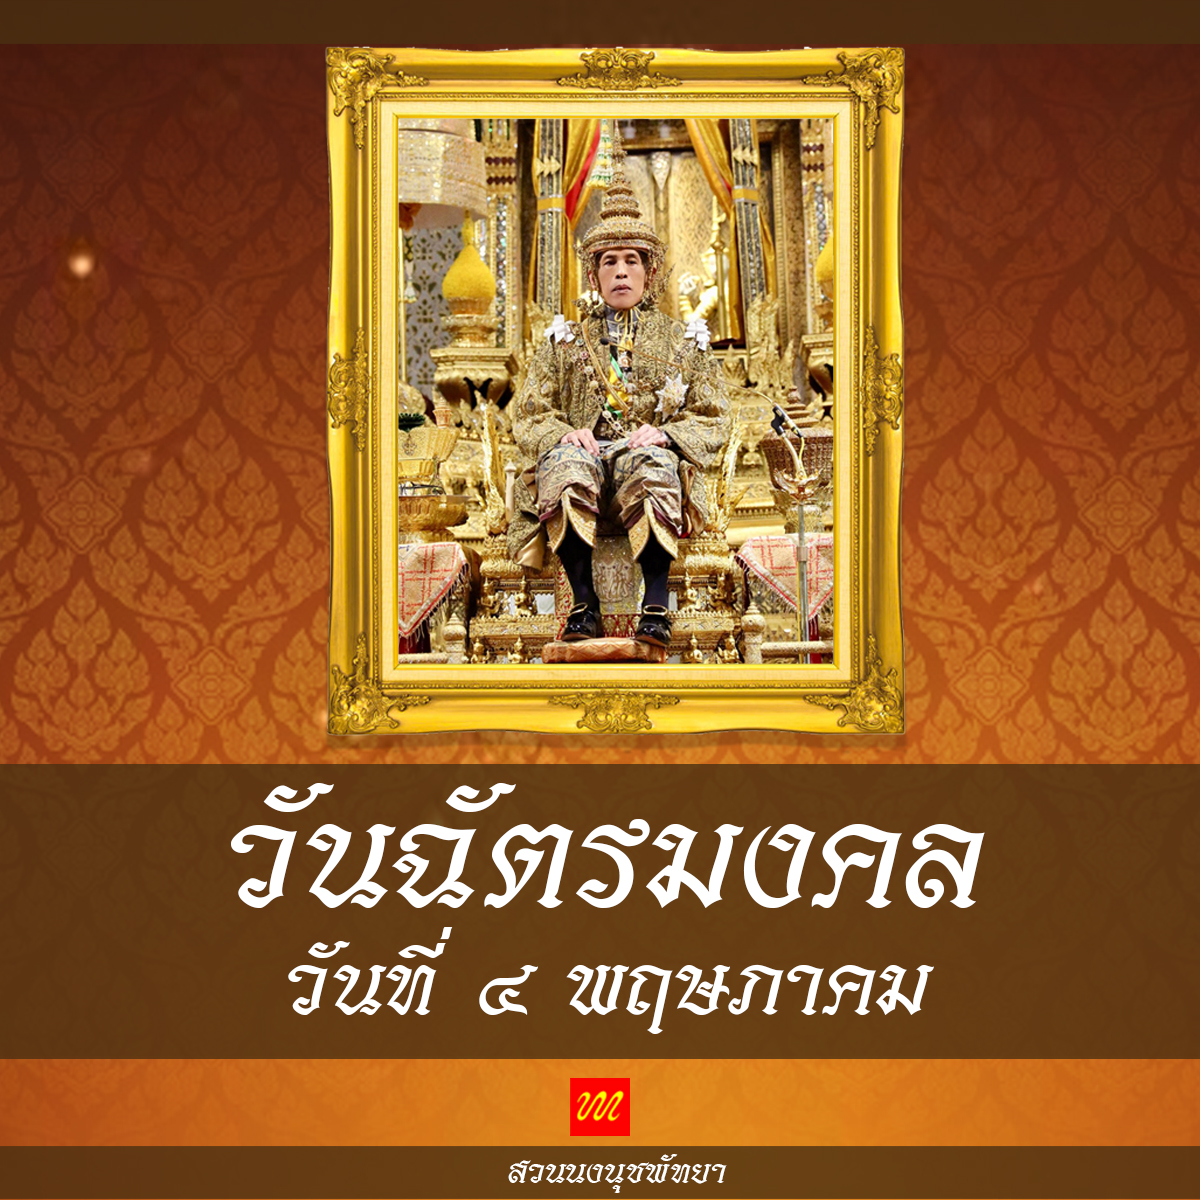 วันฉัตรมงคล เป็นวันที่รำลึกถึงพระราชพิธีบรมราชาภิเษก เป็นพระมหากษัตริย์ รัชกาลที่ 10 แห่งราชวงศ์จักรี และราชอาณาจักรไทย